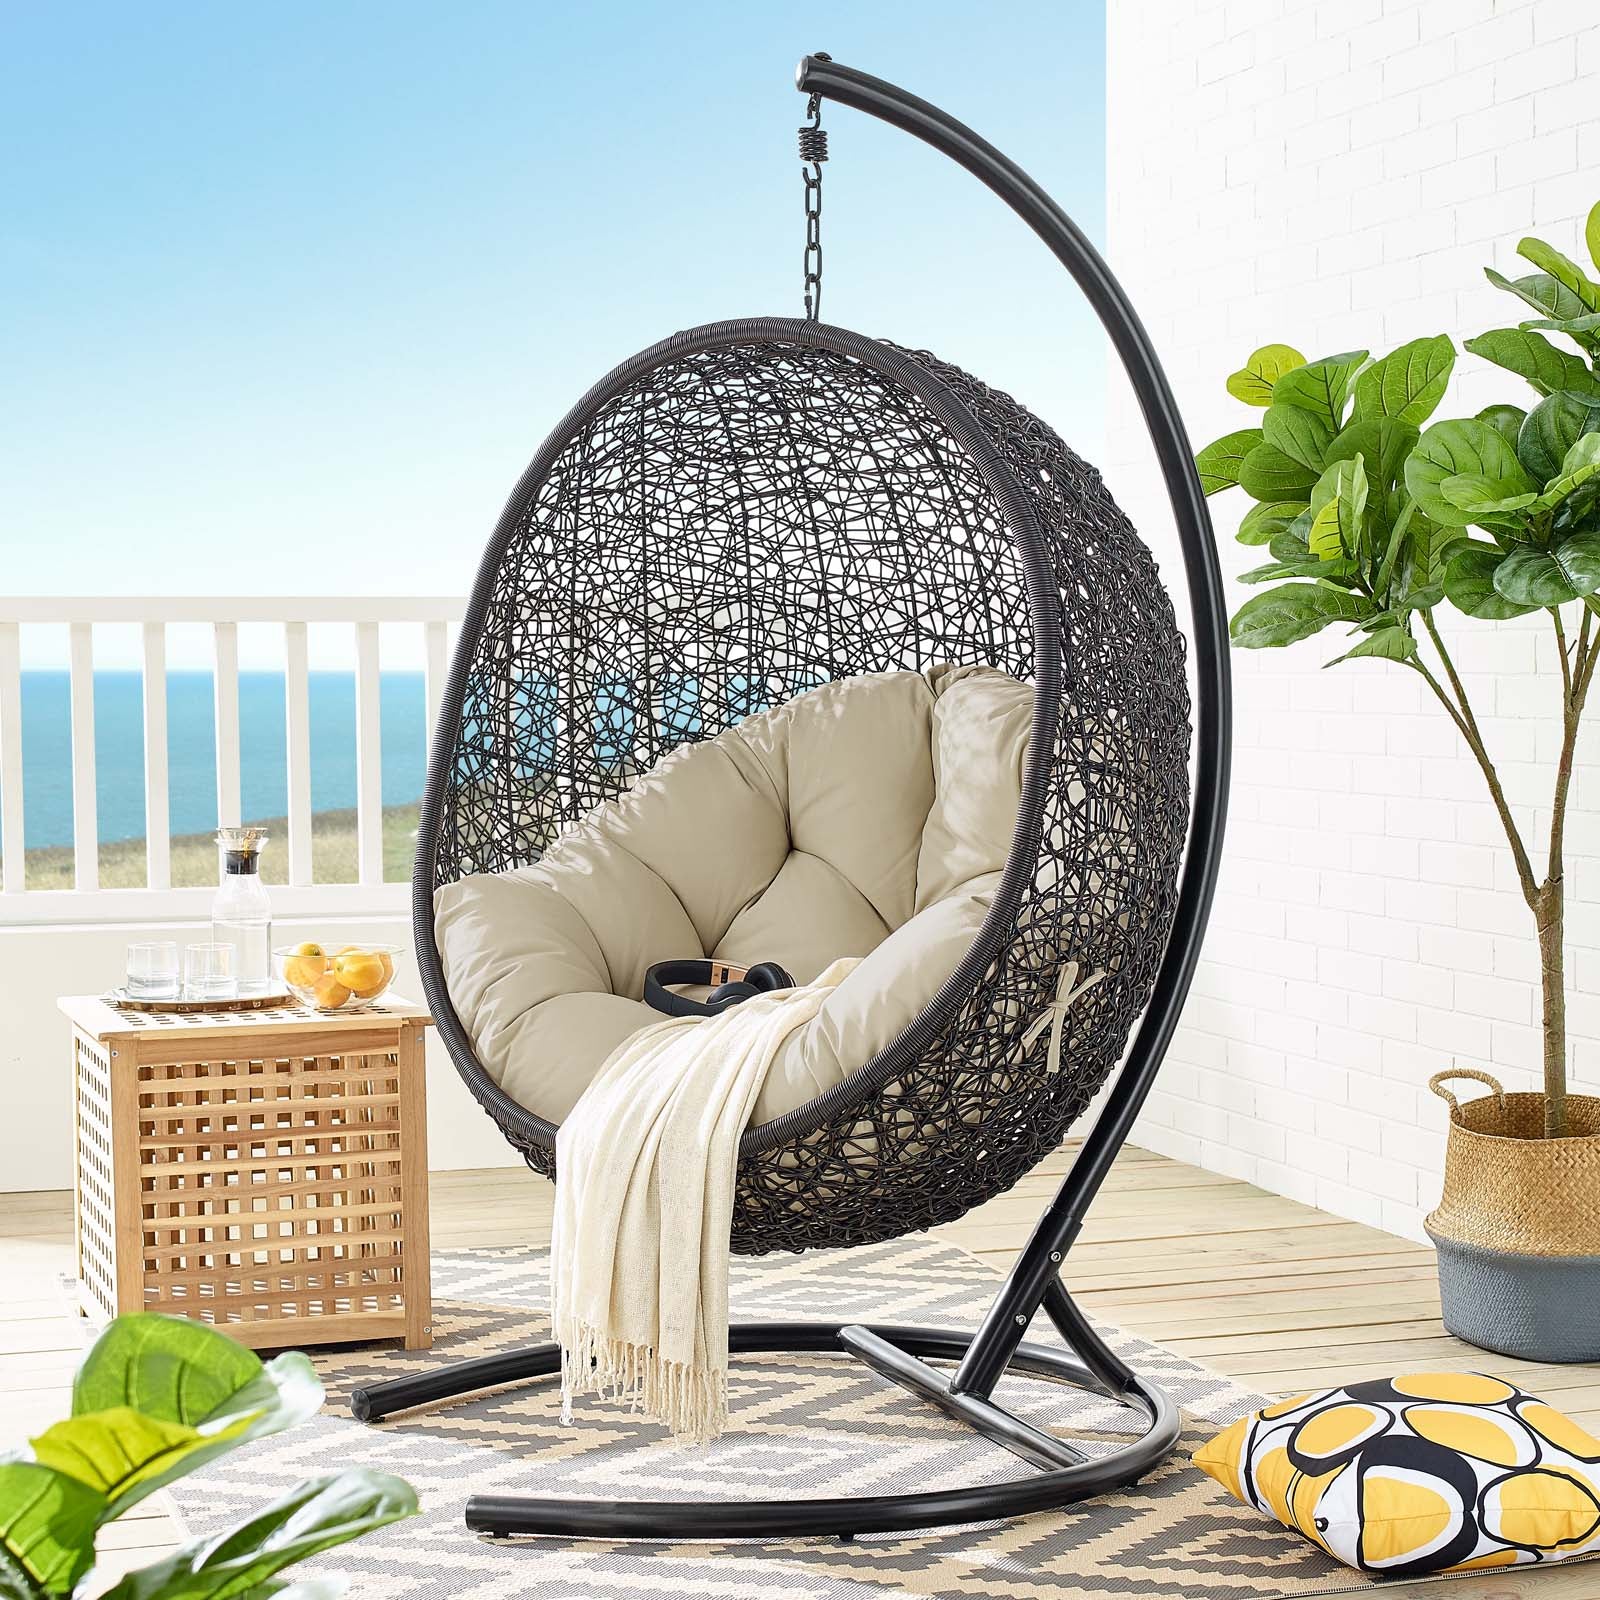 Modway Outdoor Swings - Encase Sunbrella Swing Outdoor Patio Lounge Chair Black Beige